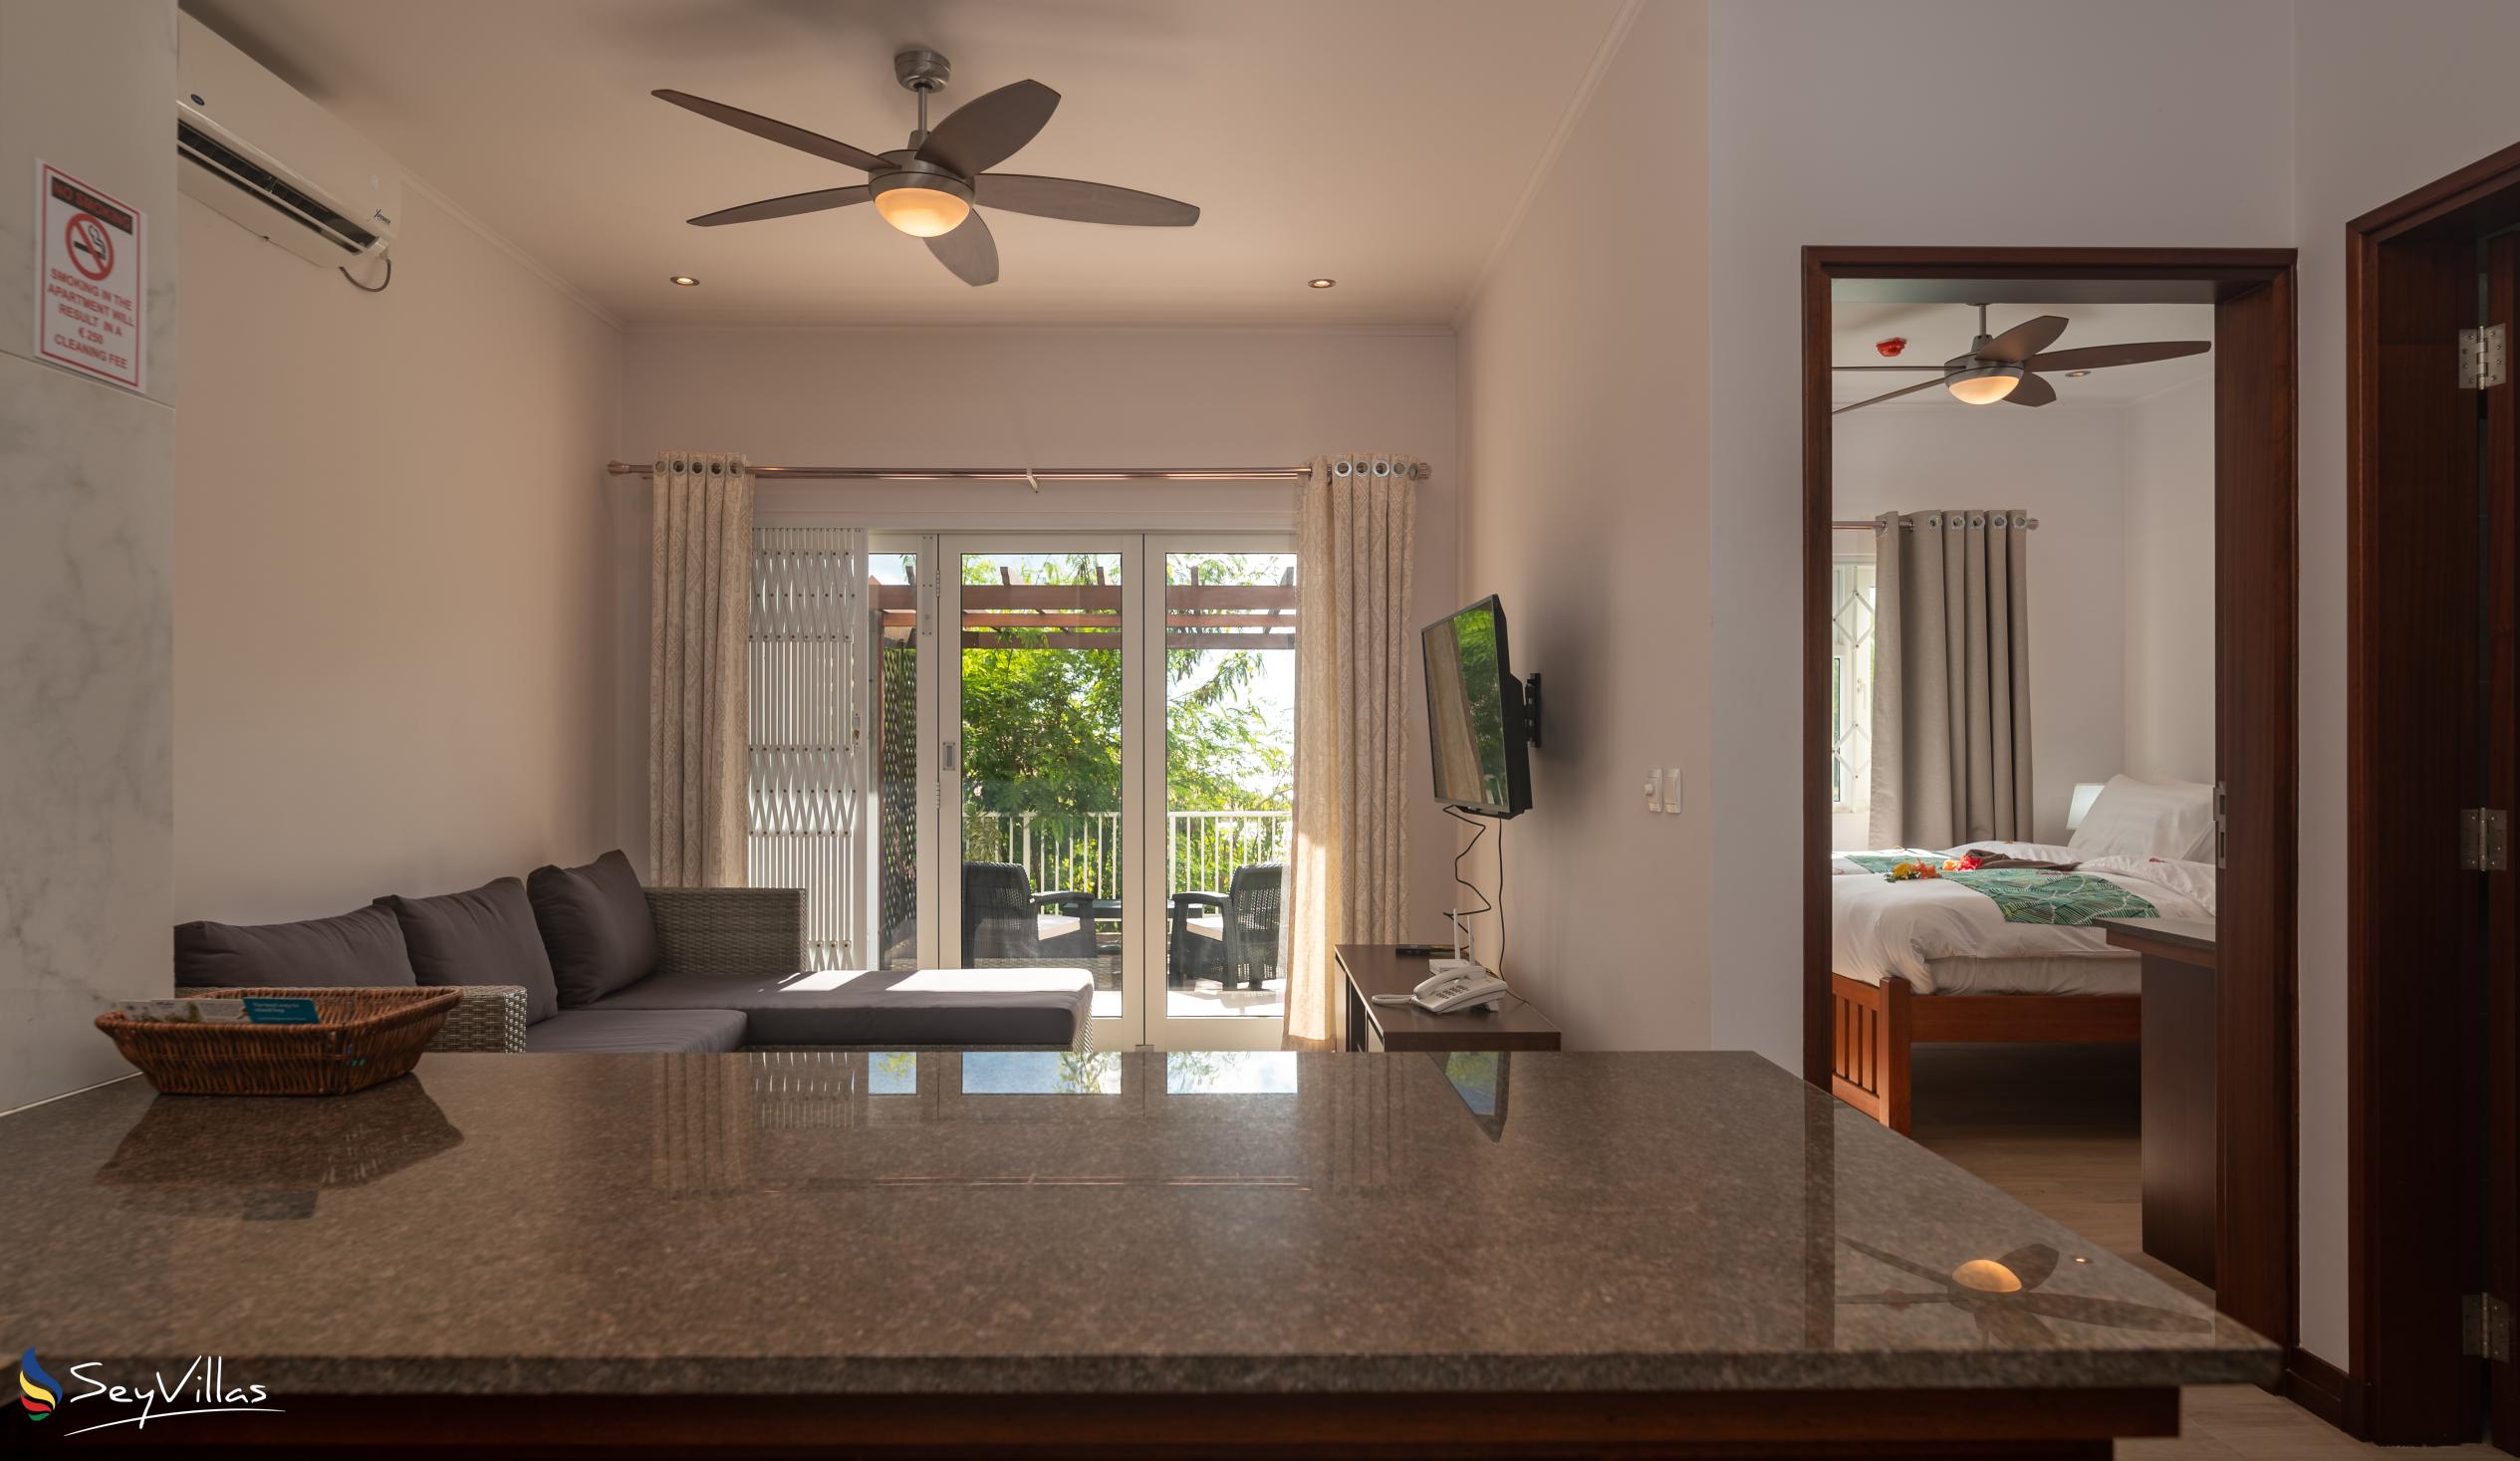 Foto 61: Crystal Shores Self Catering Apartments - Appartement avec vue sur le jardin - Mahé (Seychelles)